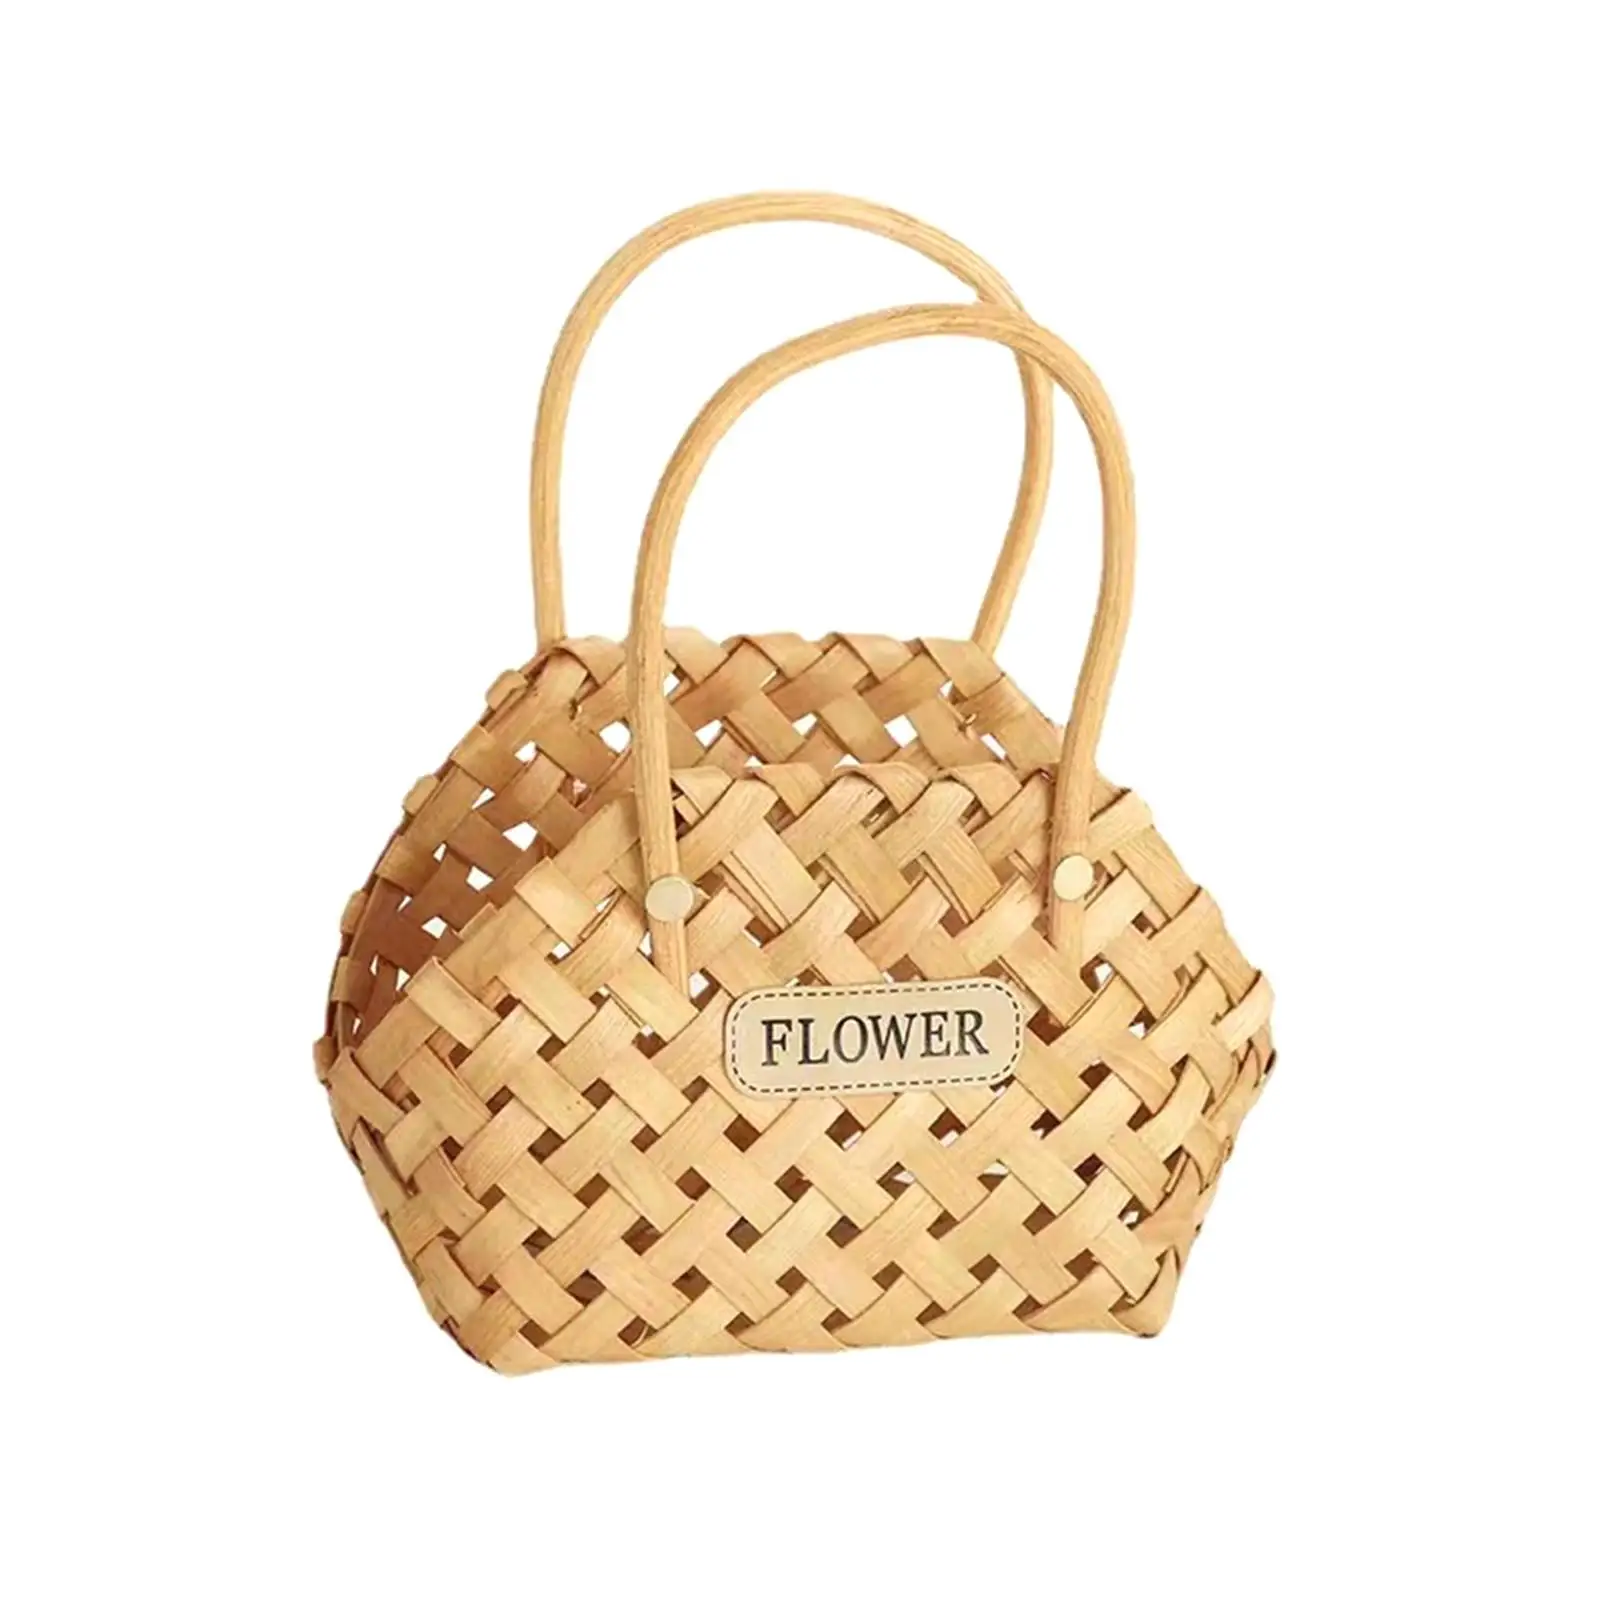 Handwoven Basket Durable Storage Serving Basket for Vegetable Flower Wedding